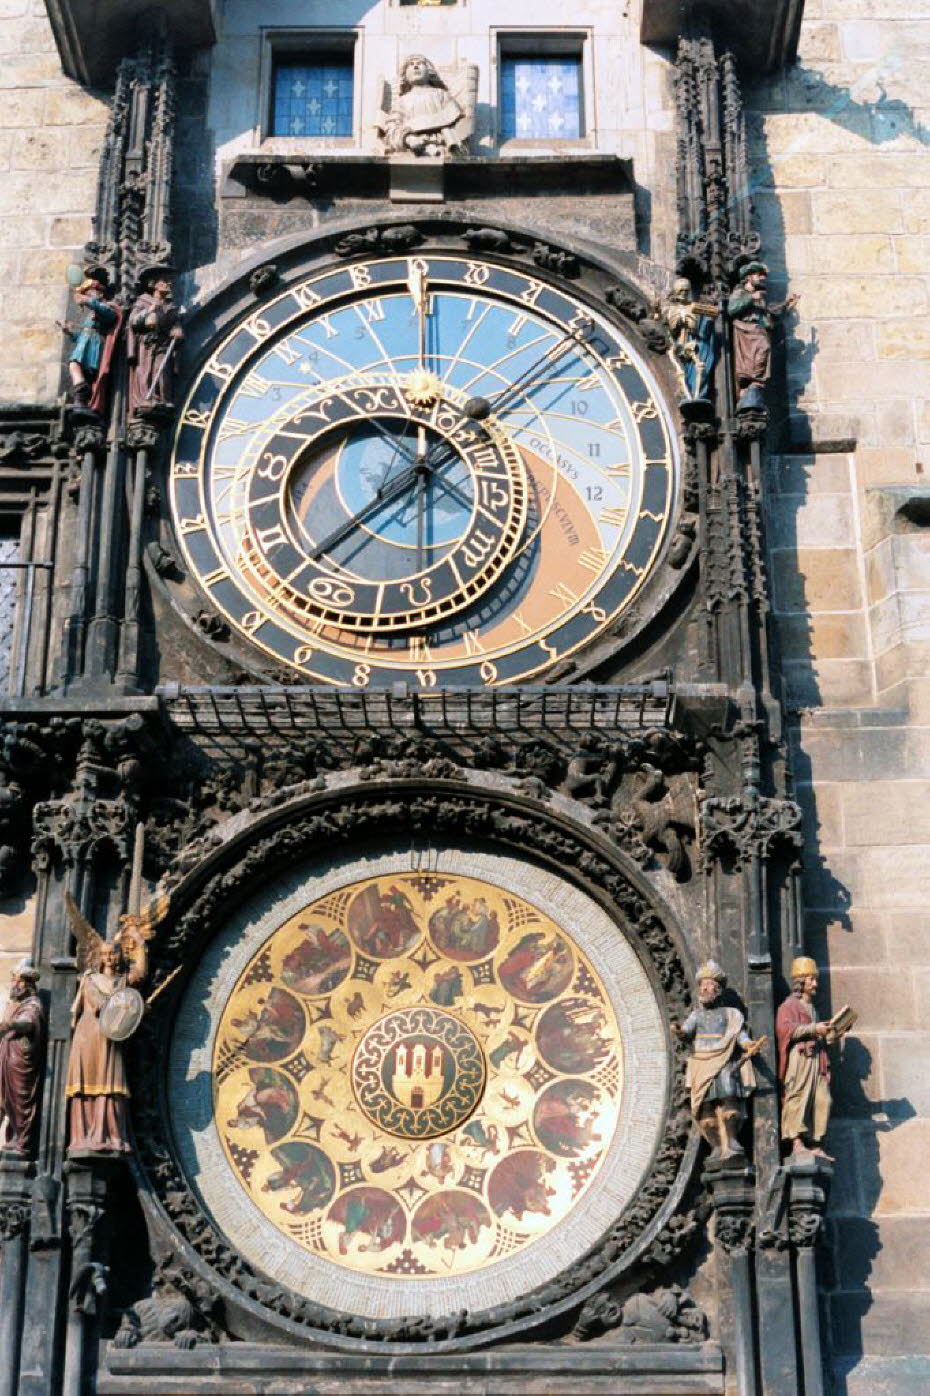 Die Astronomische Uhr ist eine Leistung von Mathematik, Kunst und Technik:Das Rathaus (mit der über 600 Jahre alten berühmten astronomischen Uhr) Die Astronomische Uhr ist eine Leistung von Mathematik, Kunst und Technik. Sie ist über 600 Jahre alt. Regelm